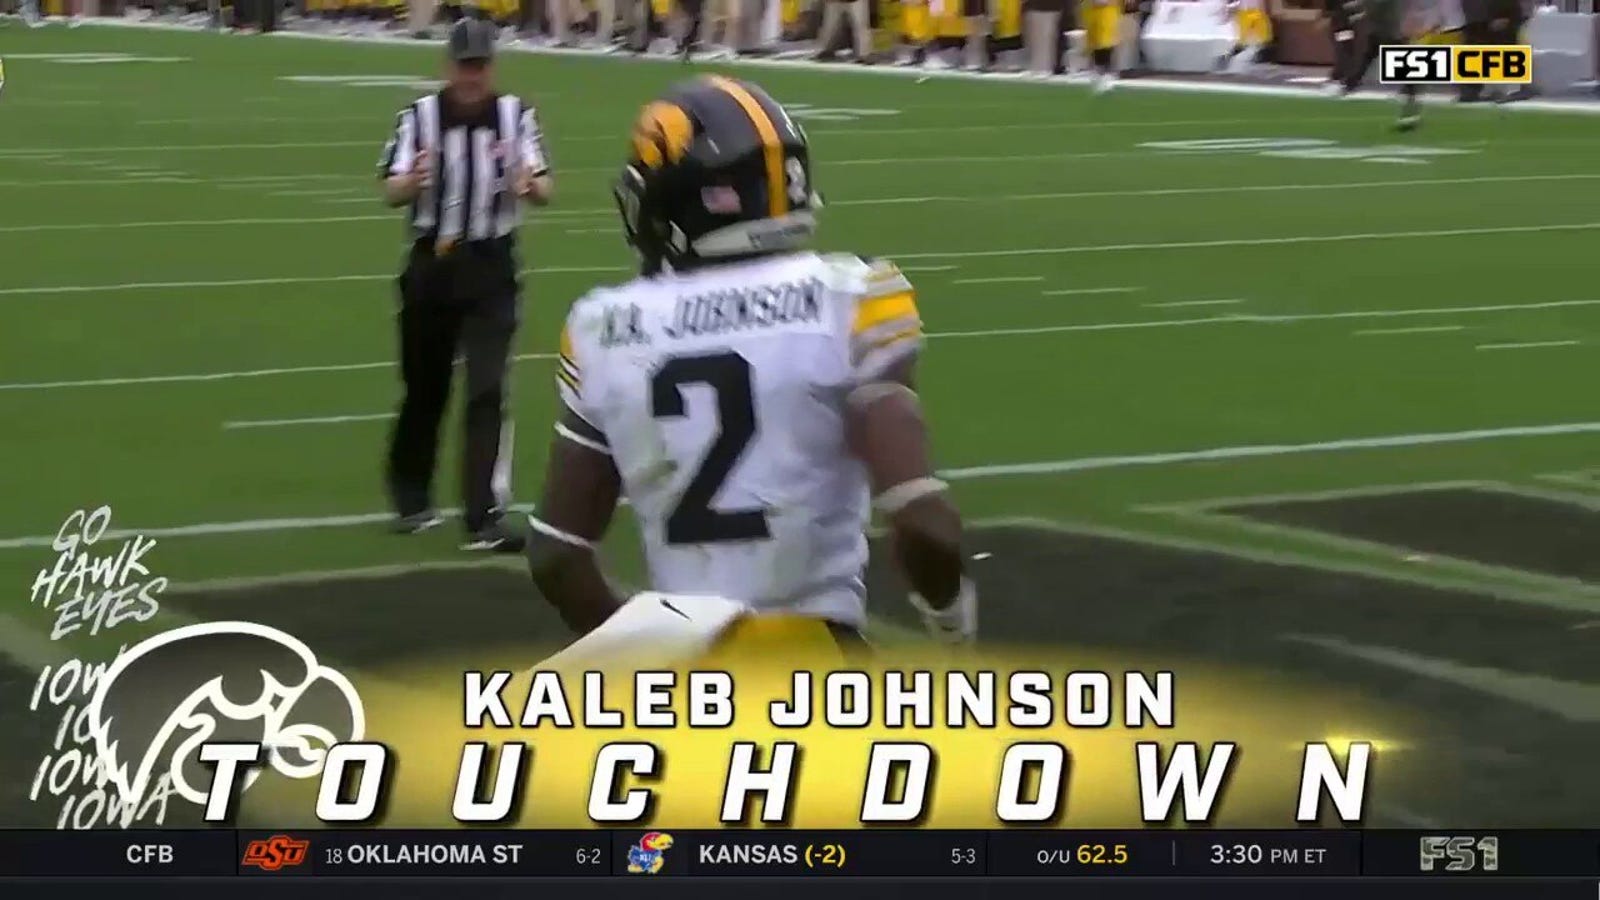 Kaleb Johnson goes 75 yards to the house!